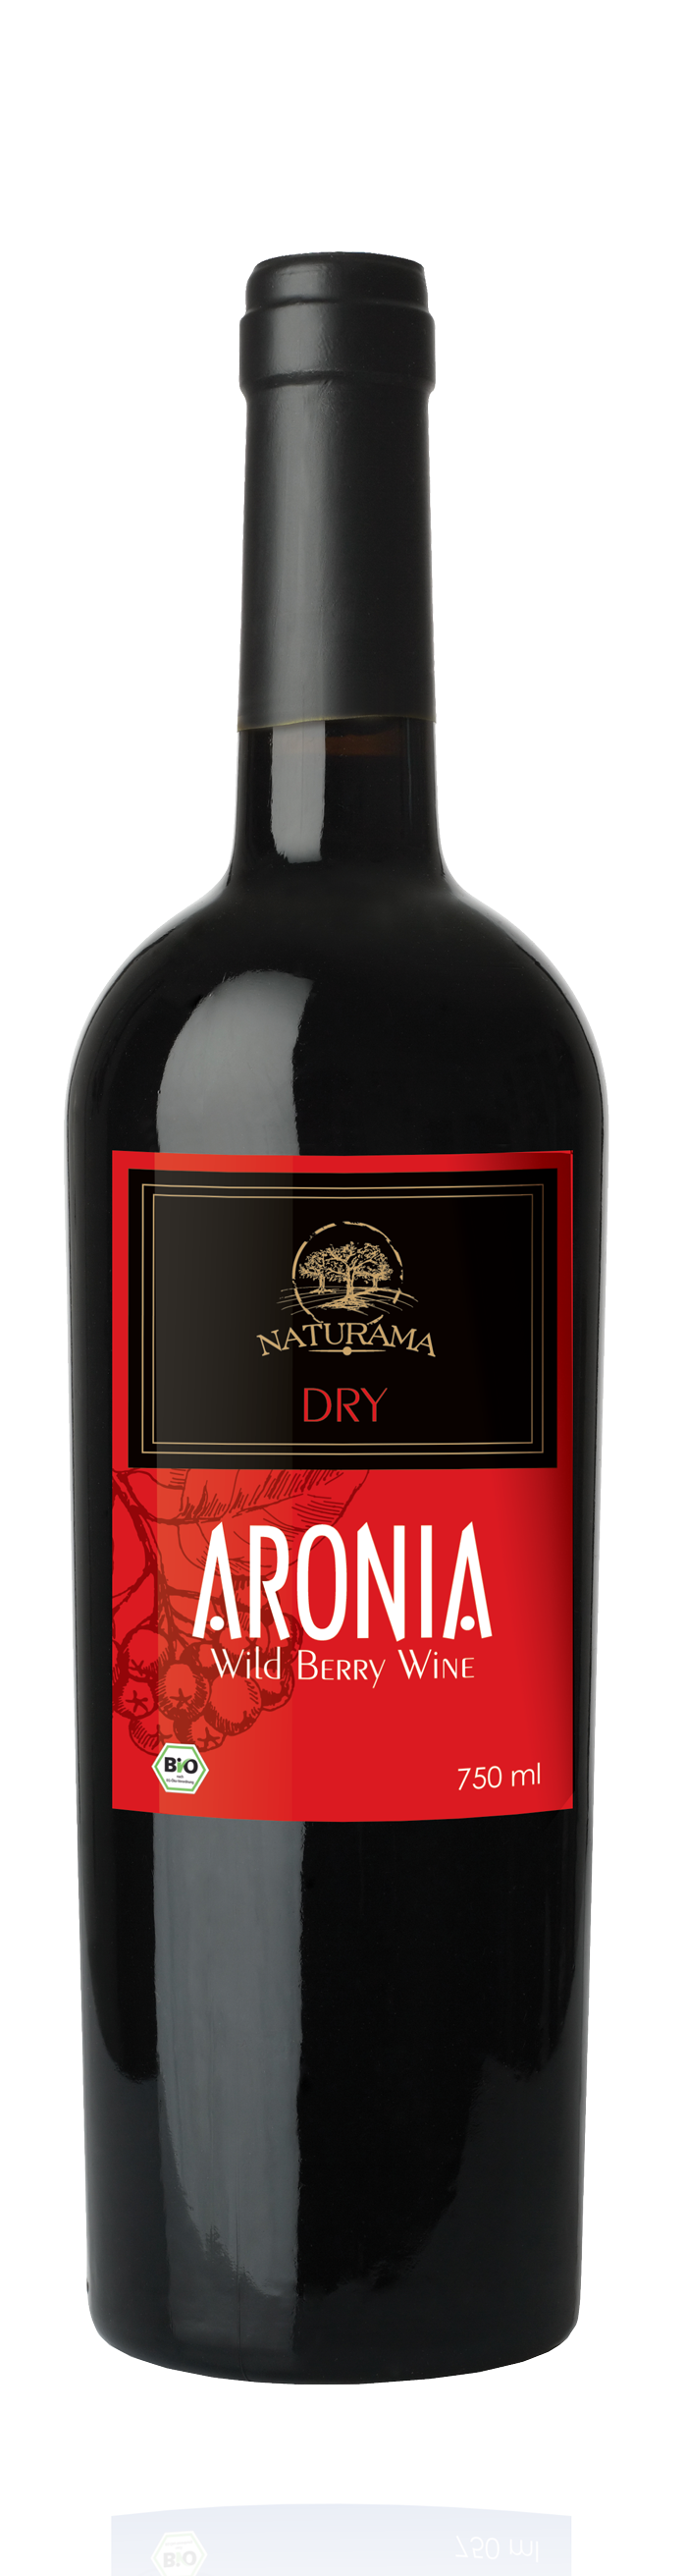 Aronia – Wild Berry Wine (DRY)